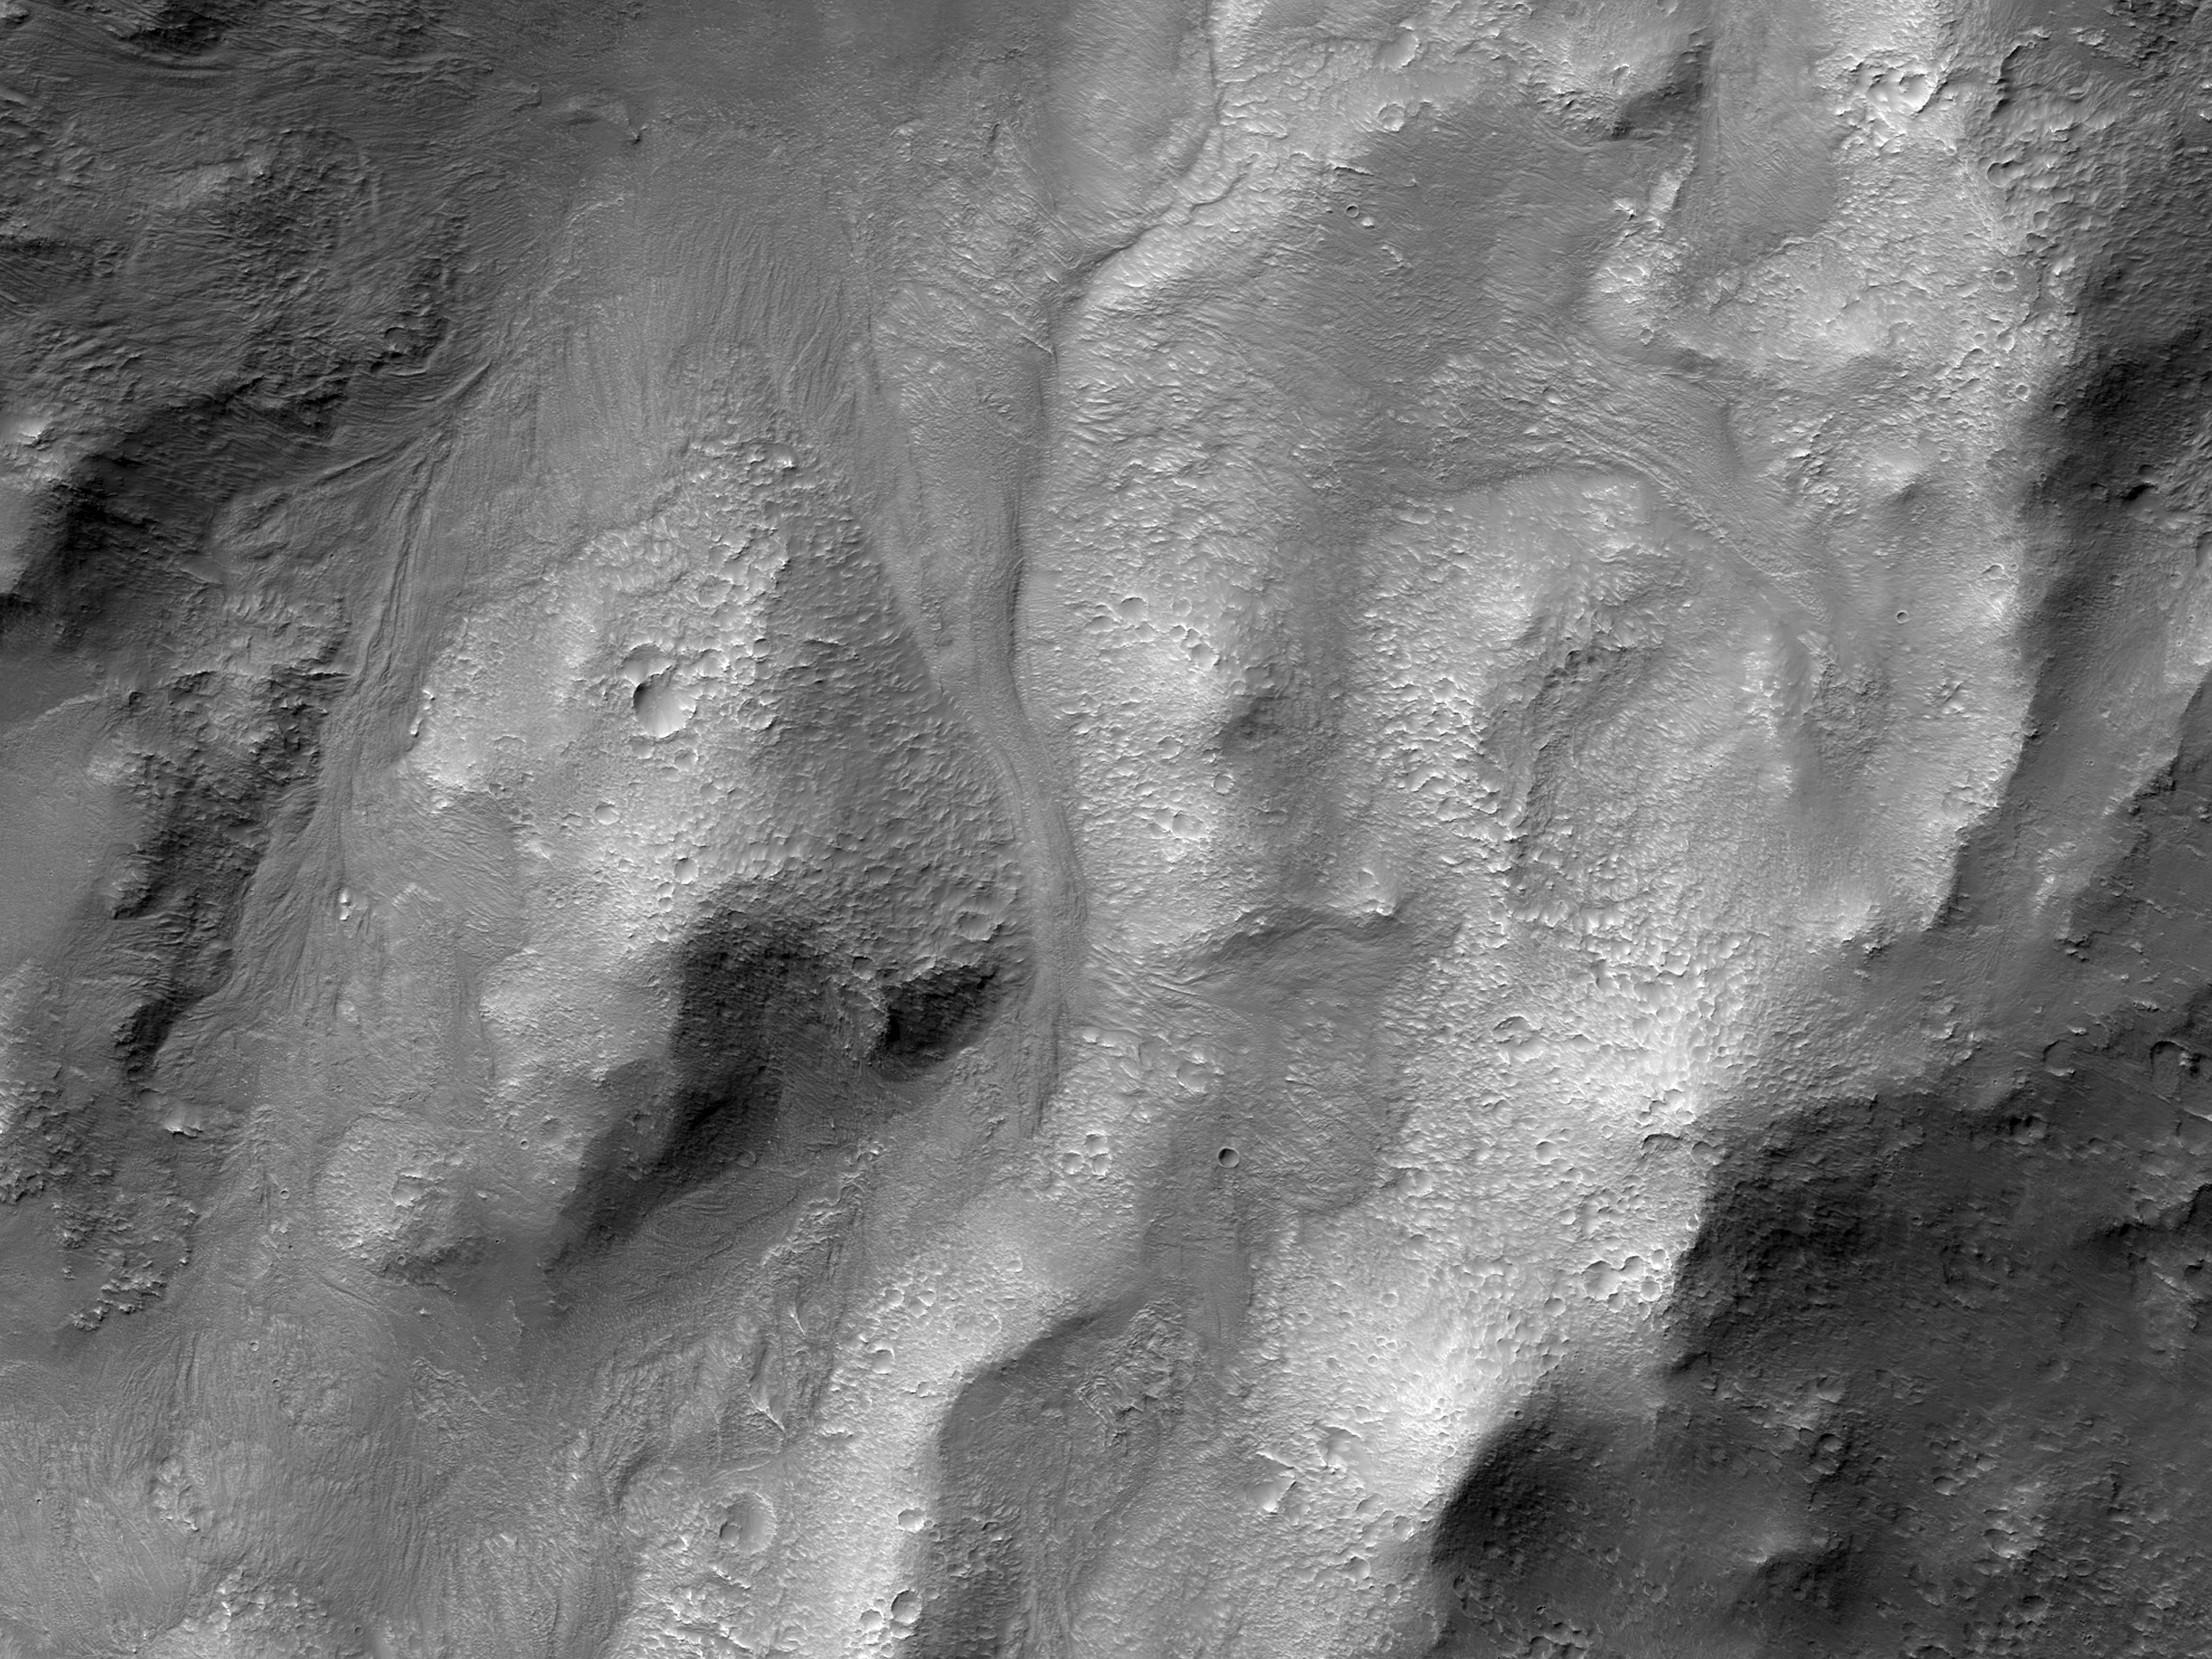 Noord-kraterns sekundära nedslags- och flödesformer i Noachis Terra